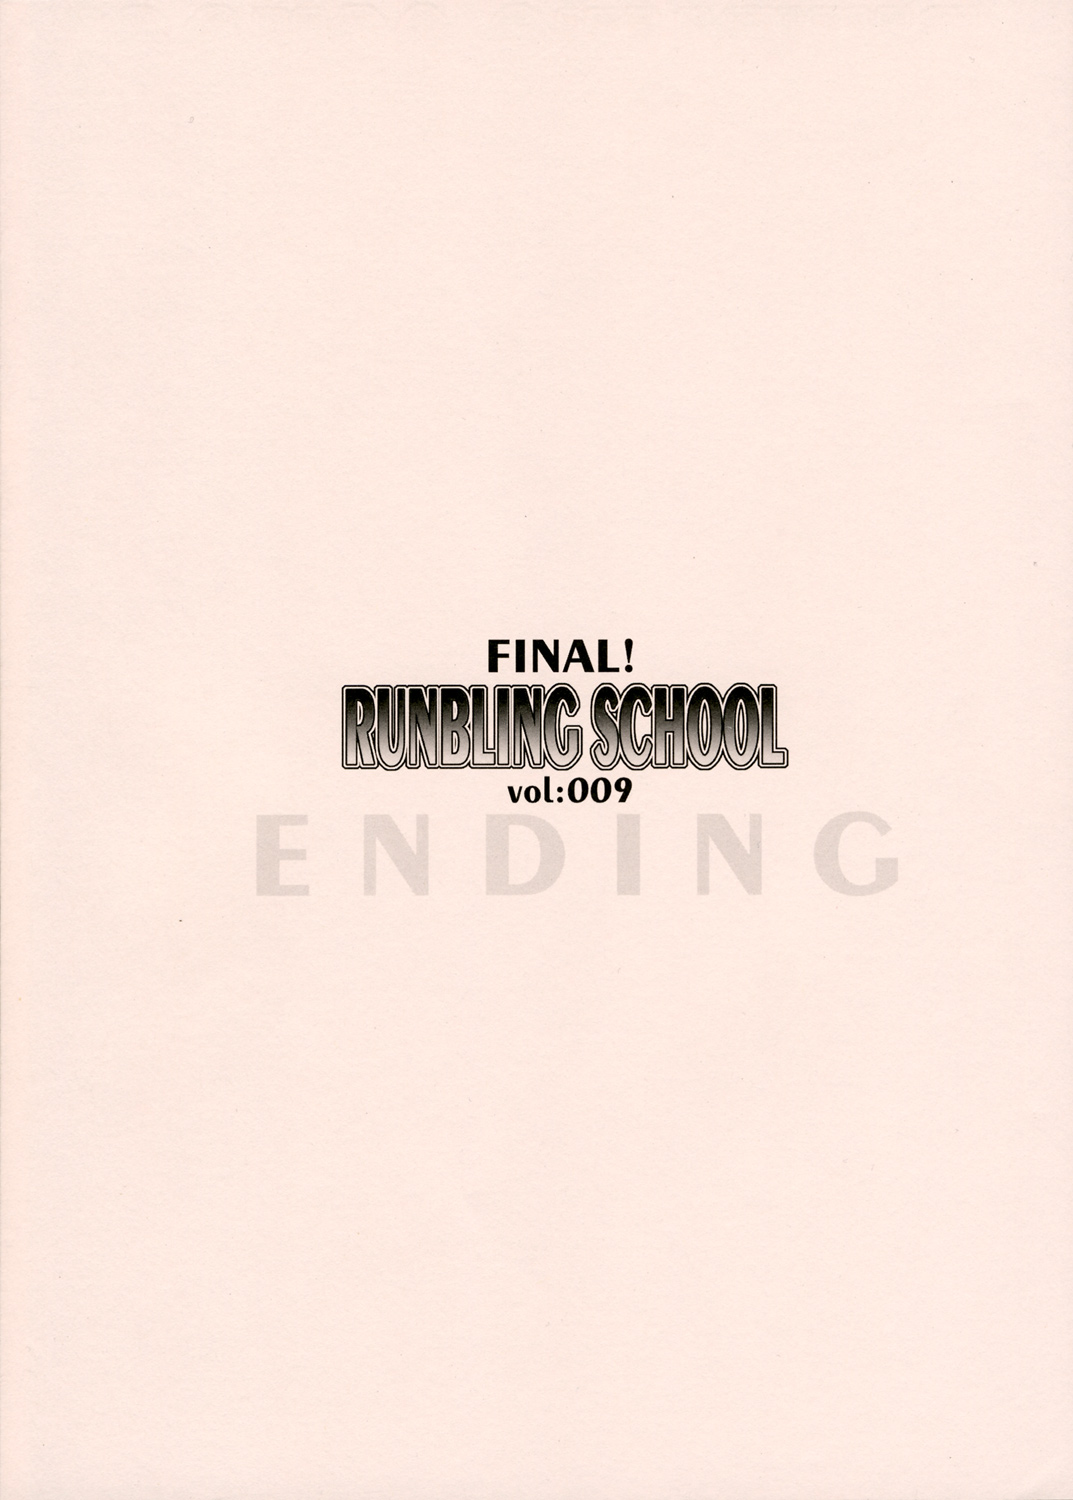 [有葉と愉快な仲間たち (有葉)] RUNBLING SCHOOL vol:009 FINAL! (スクールランブル)